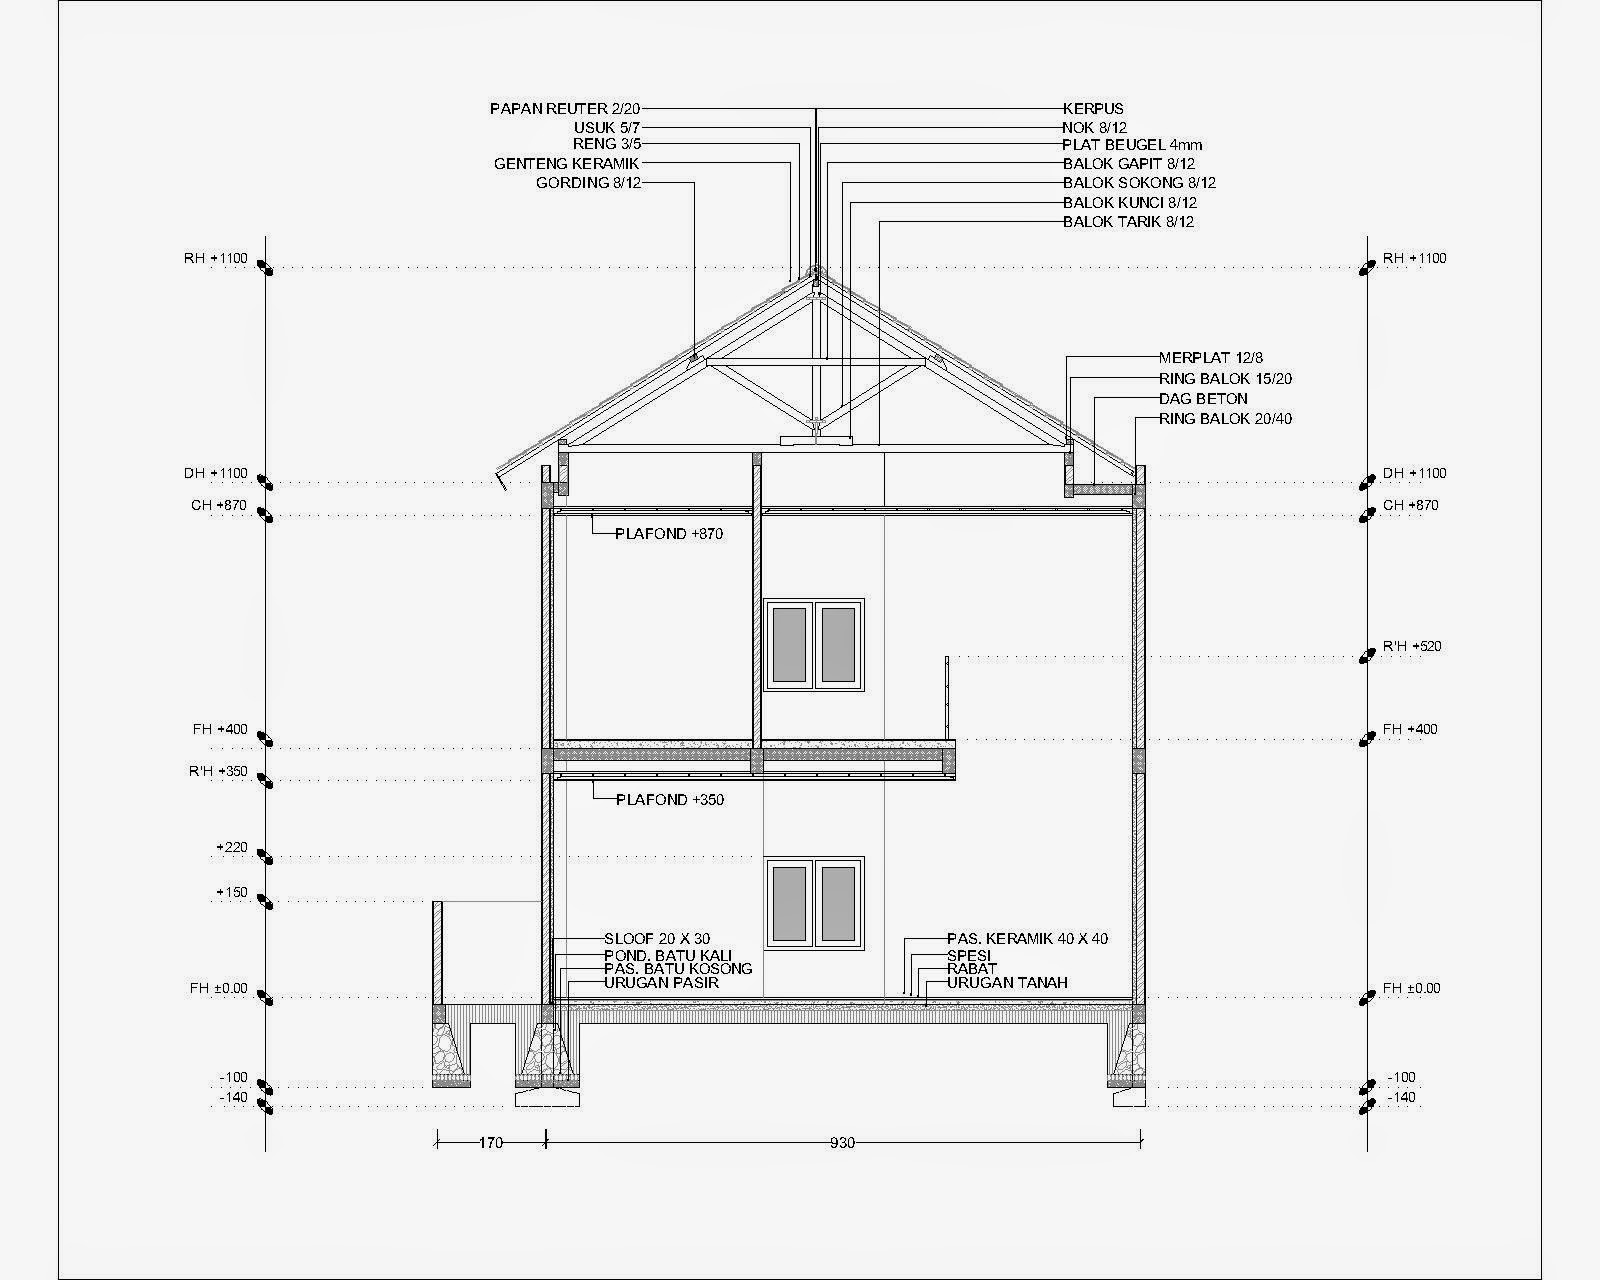 107 Denah  Rumah  Minimalis  Format Autocad  Gambar  Desain 